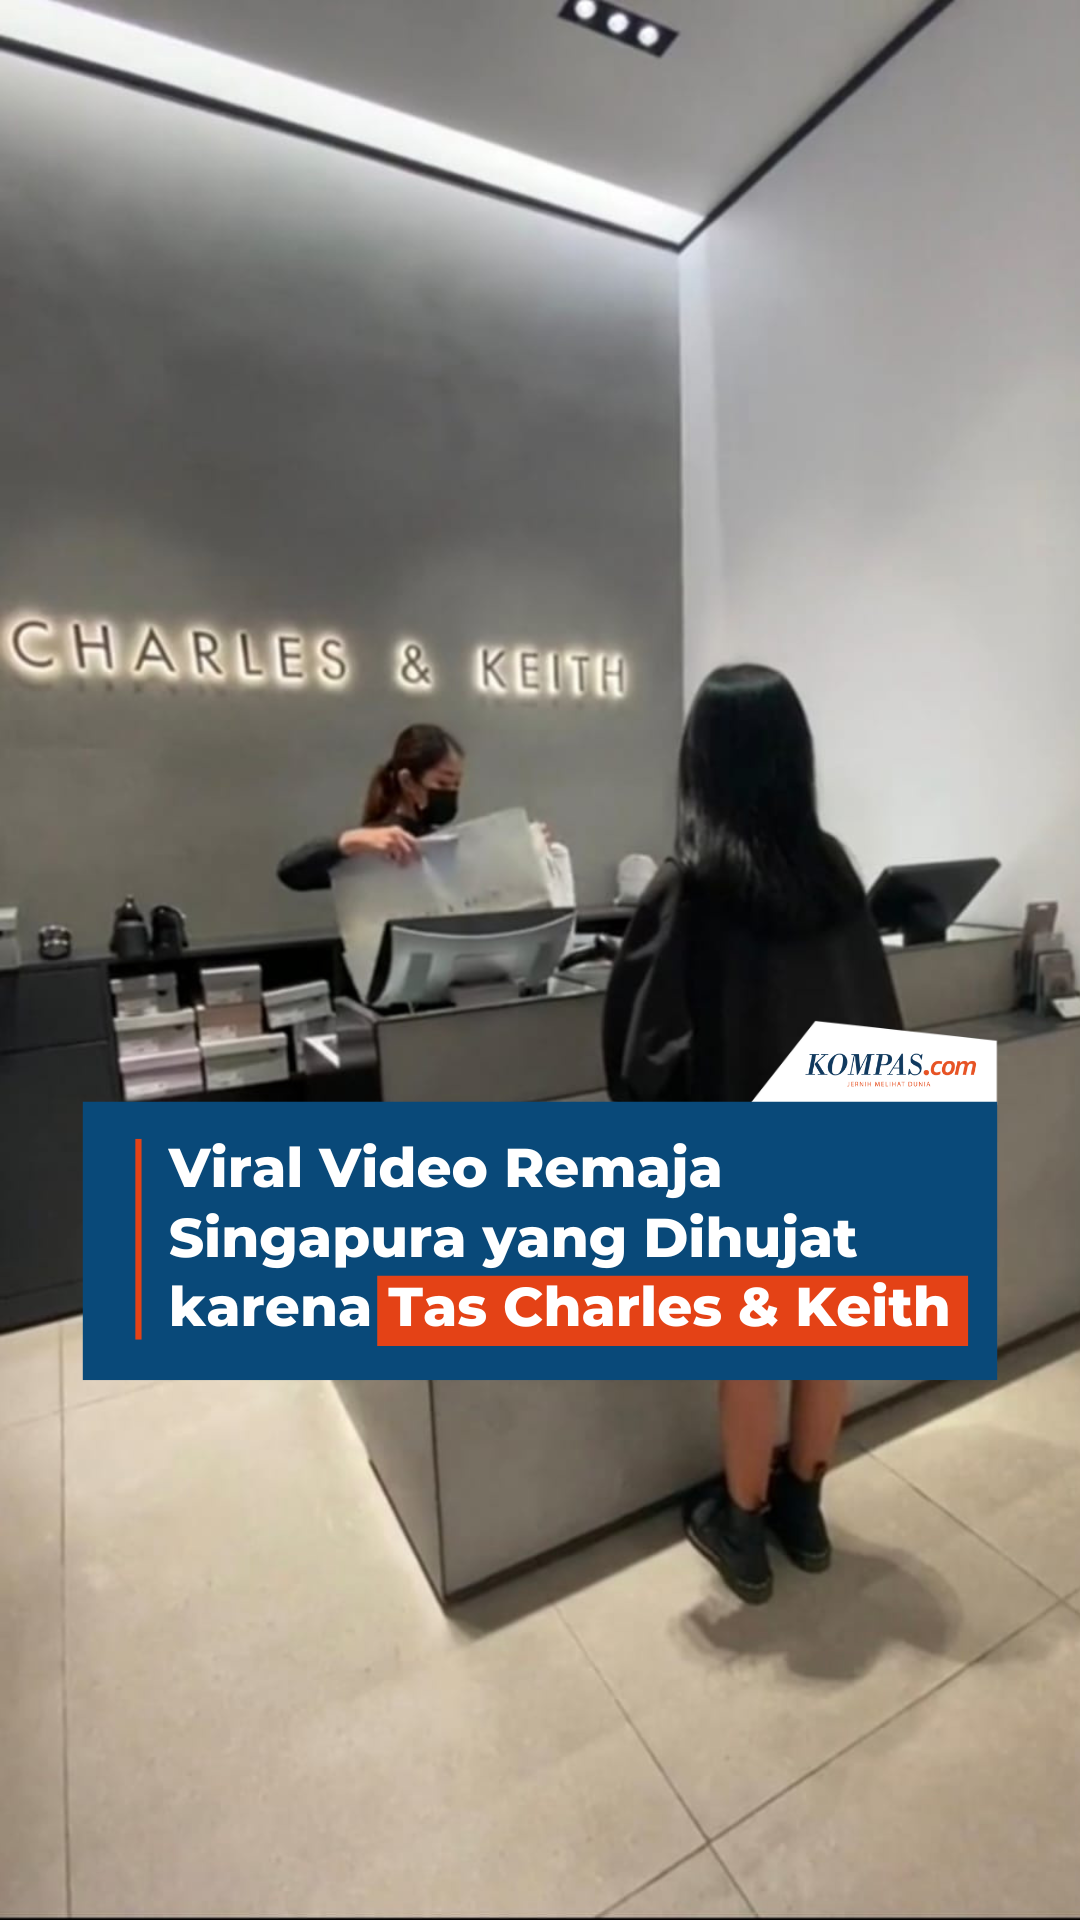 Viral Video Remaja Singapura yang Dihujat karena Tas Charles & Keith